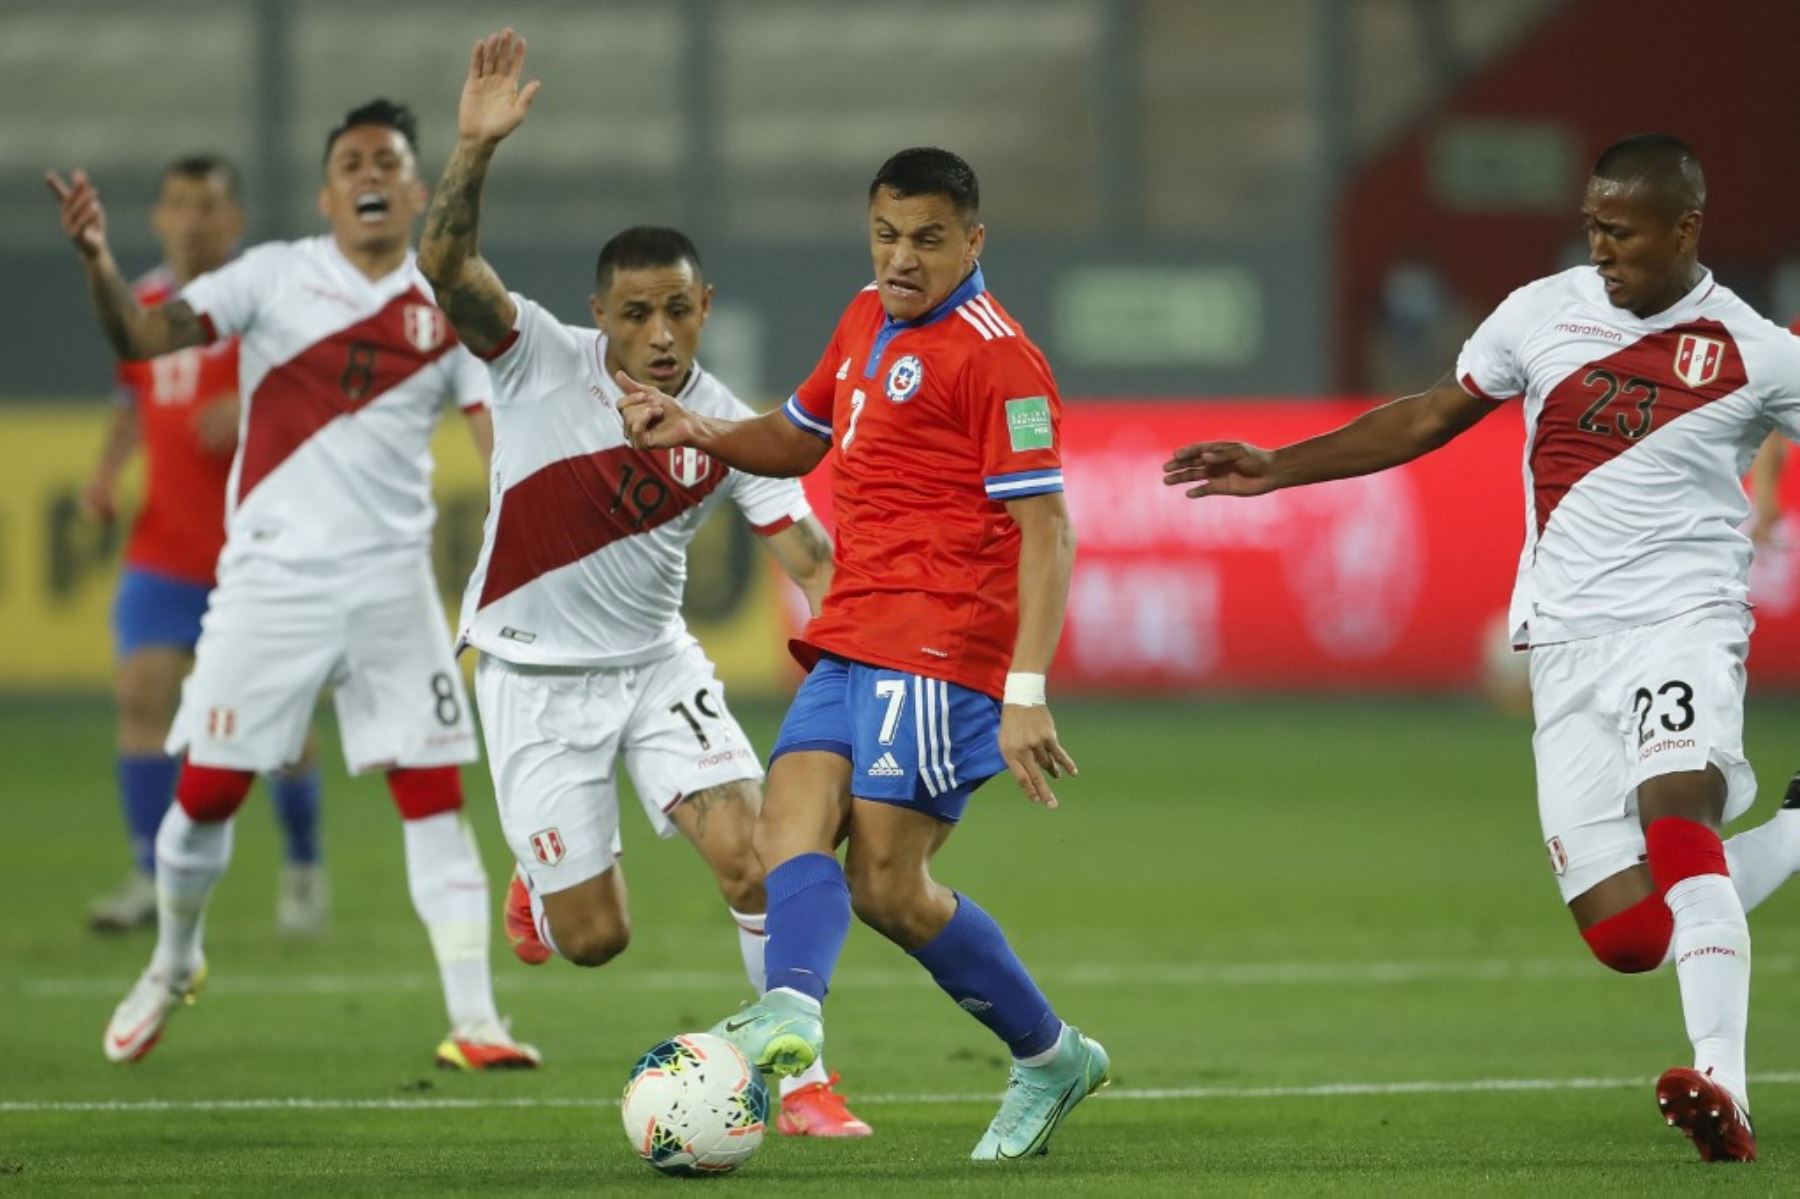 El chileno Alexis Sánchez (C) compite por el balón con los peruanos Yoshimar Yotun (L) y Pedro Aquino (R) durante su partido de fútbol de clasificación sudamericano para la Copa Mundial de la FIFA Qatar 2022 en el Estadio Nacional de Lima el 7 de octubre de 2021. Foto: AFP